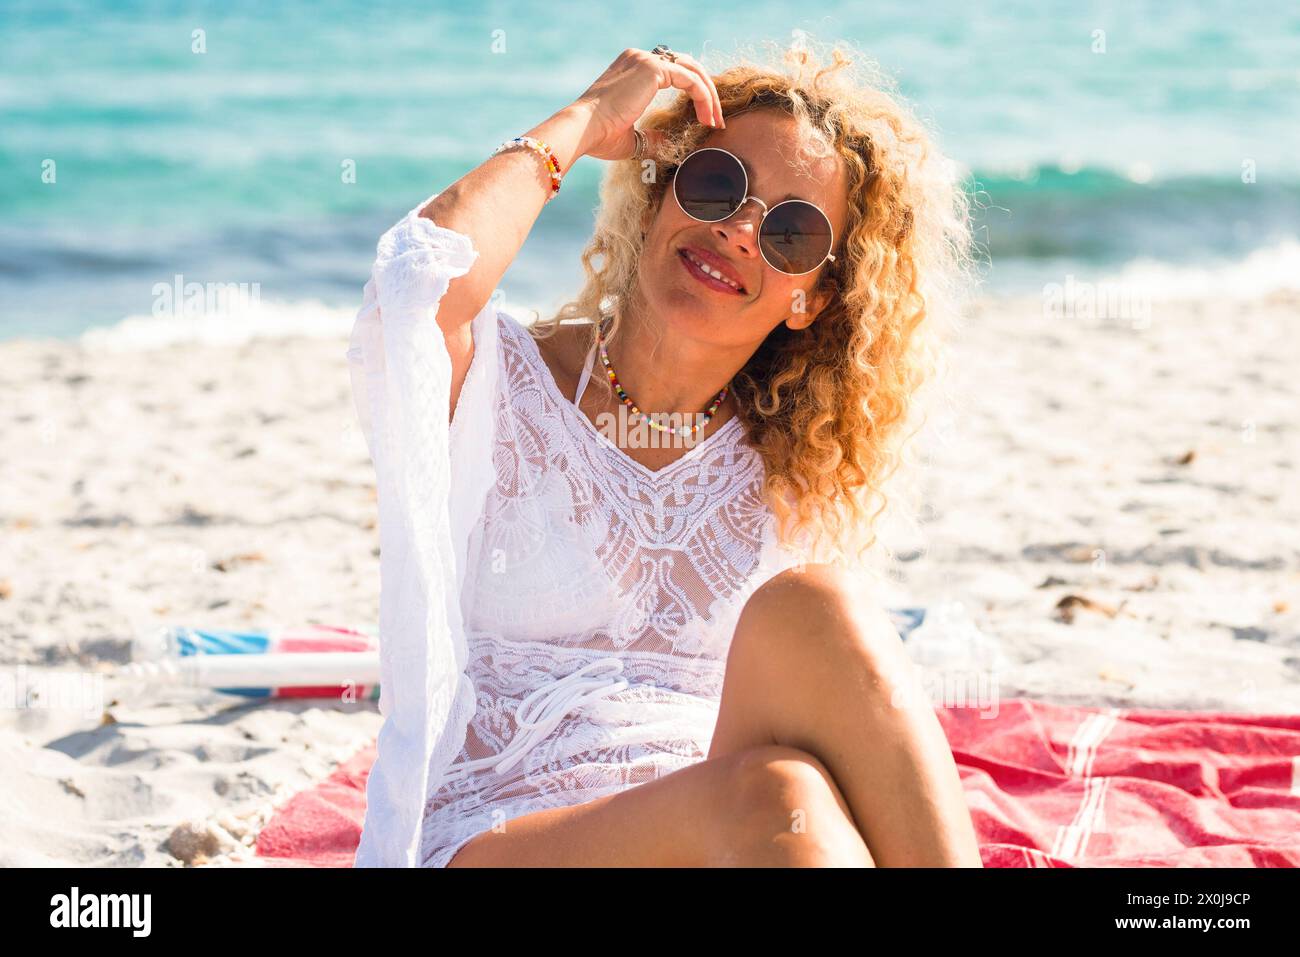 Ritratto di donna turista sorriso e posa seduta in spiaggia su sabbia bianca e blu oceano sullo sfondo. Concetto di attività turistica felice. Le donne nella vita di vacanza estiva Foto Stock